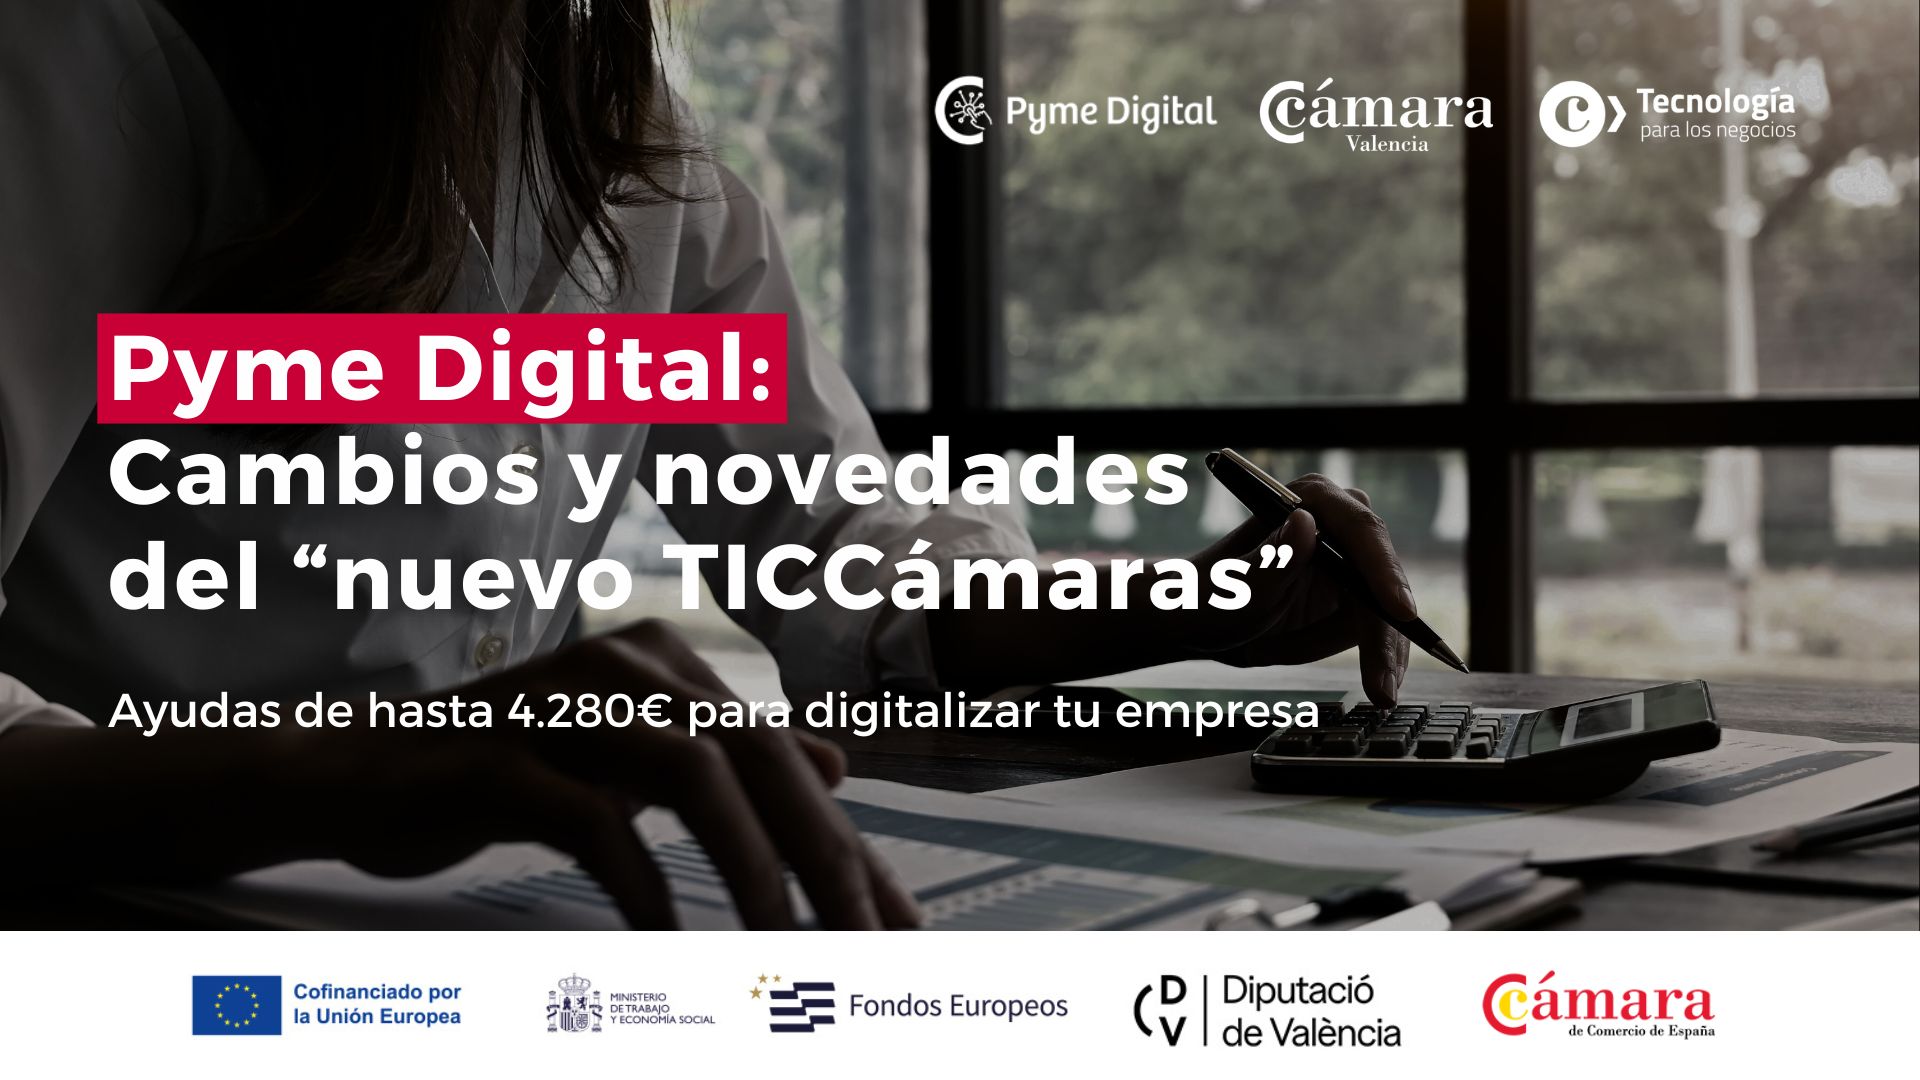 Ayudas digitalización Cámara Valencia: Pyme Digital Cambios y novedades del “nuevo TICCámaras”